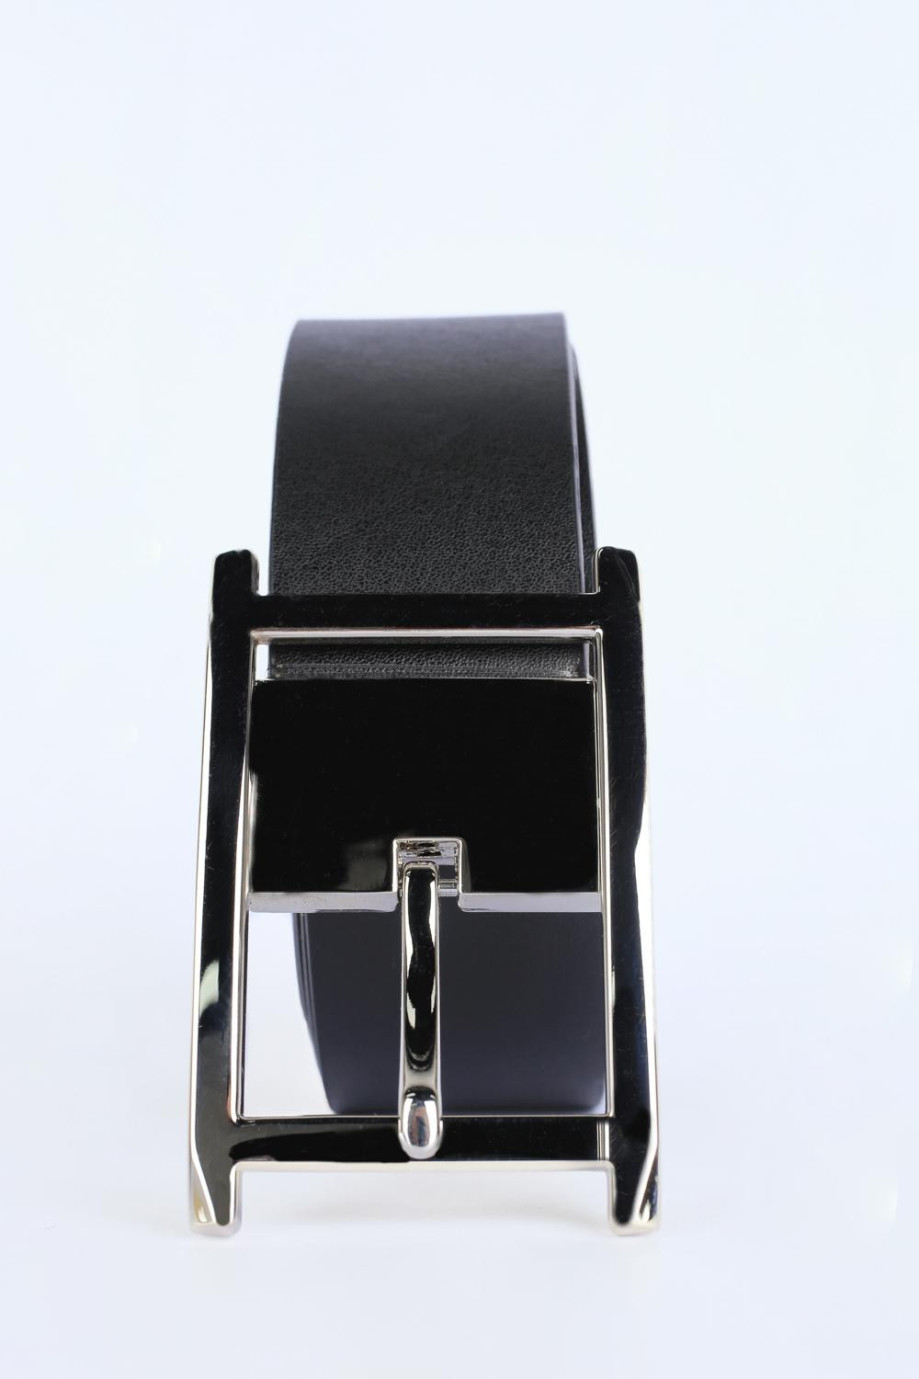 Cinturón negro sintético con hebilla cuadrada y trabilla metálicas